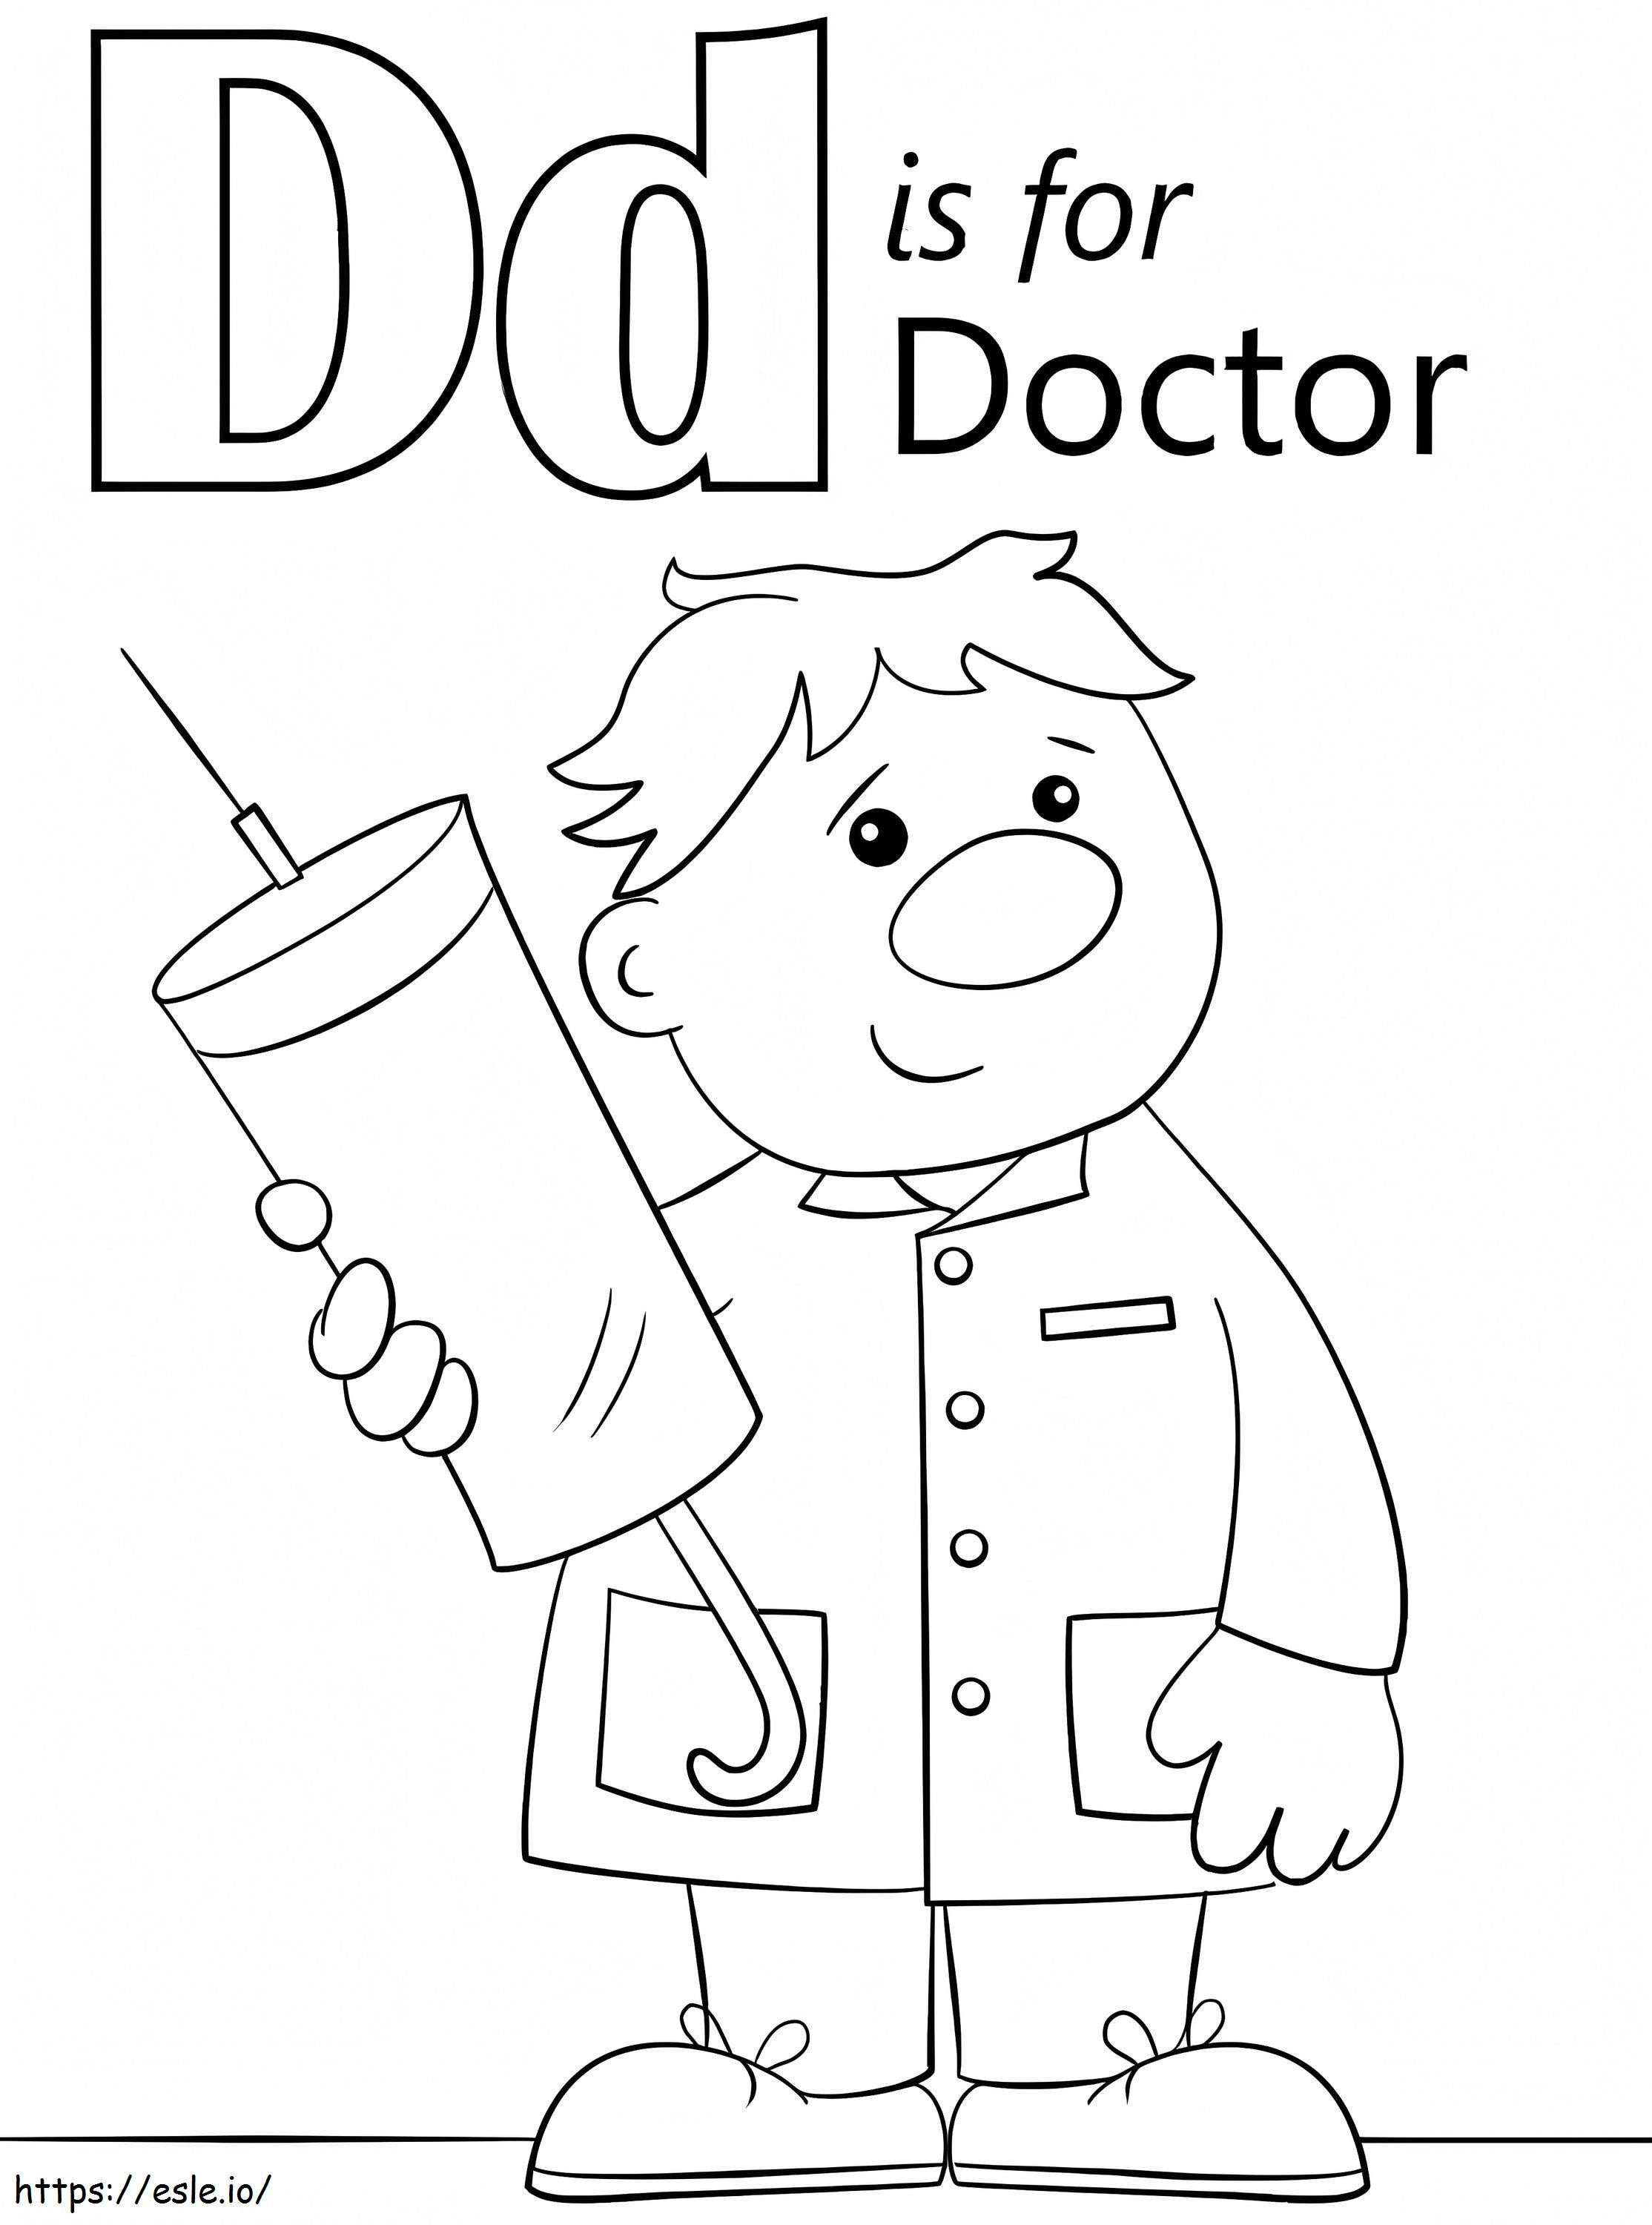 Dottore Lettera D da colorare